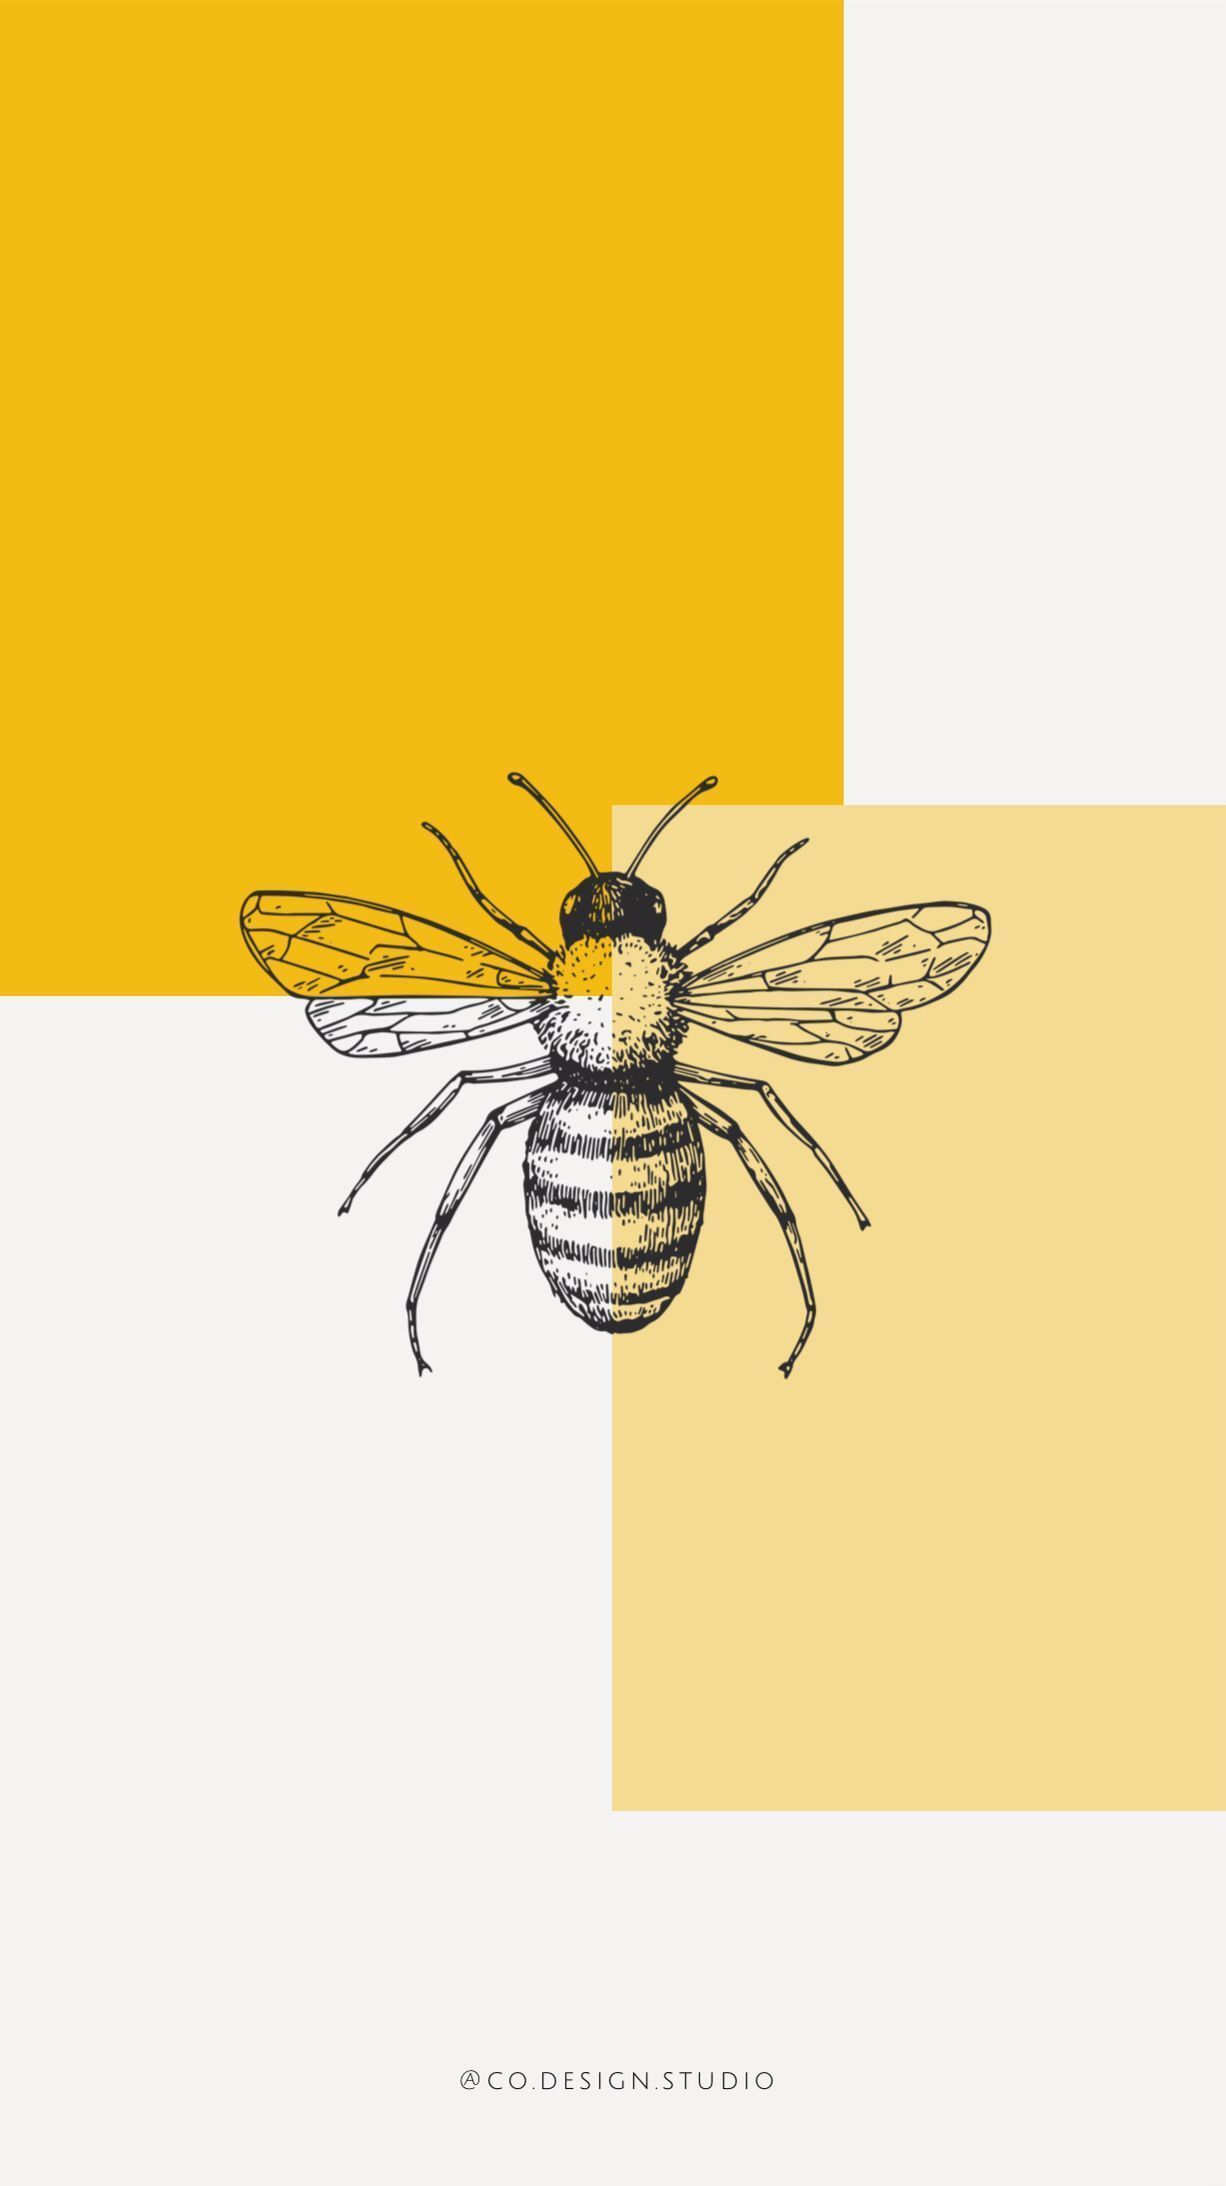 wallpaper #iphone #graphicdesign #yellow #mustard #bee #honey. Art wallpaper, Yellow wallpaper, Art